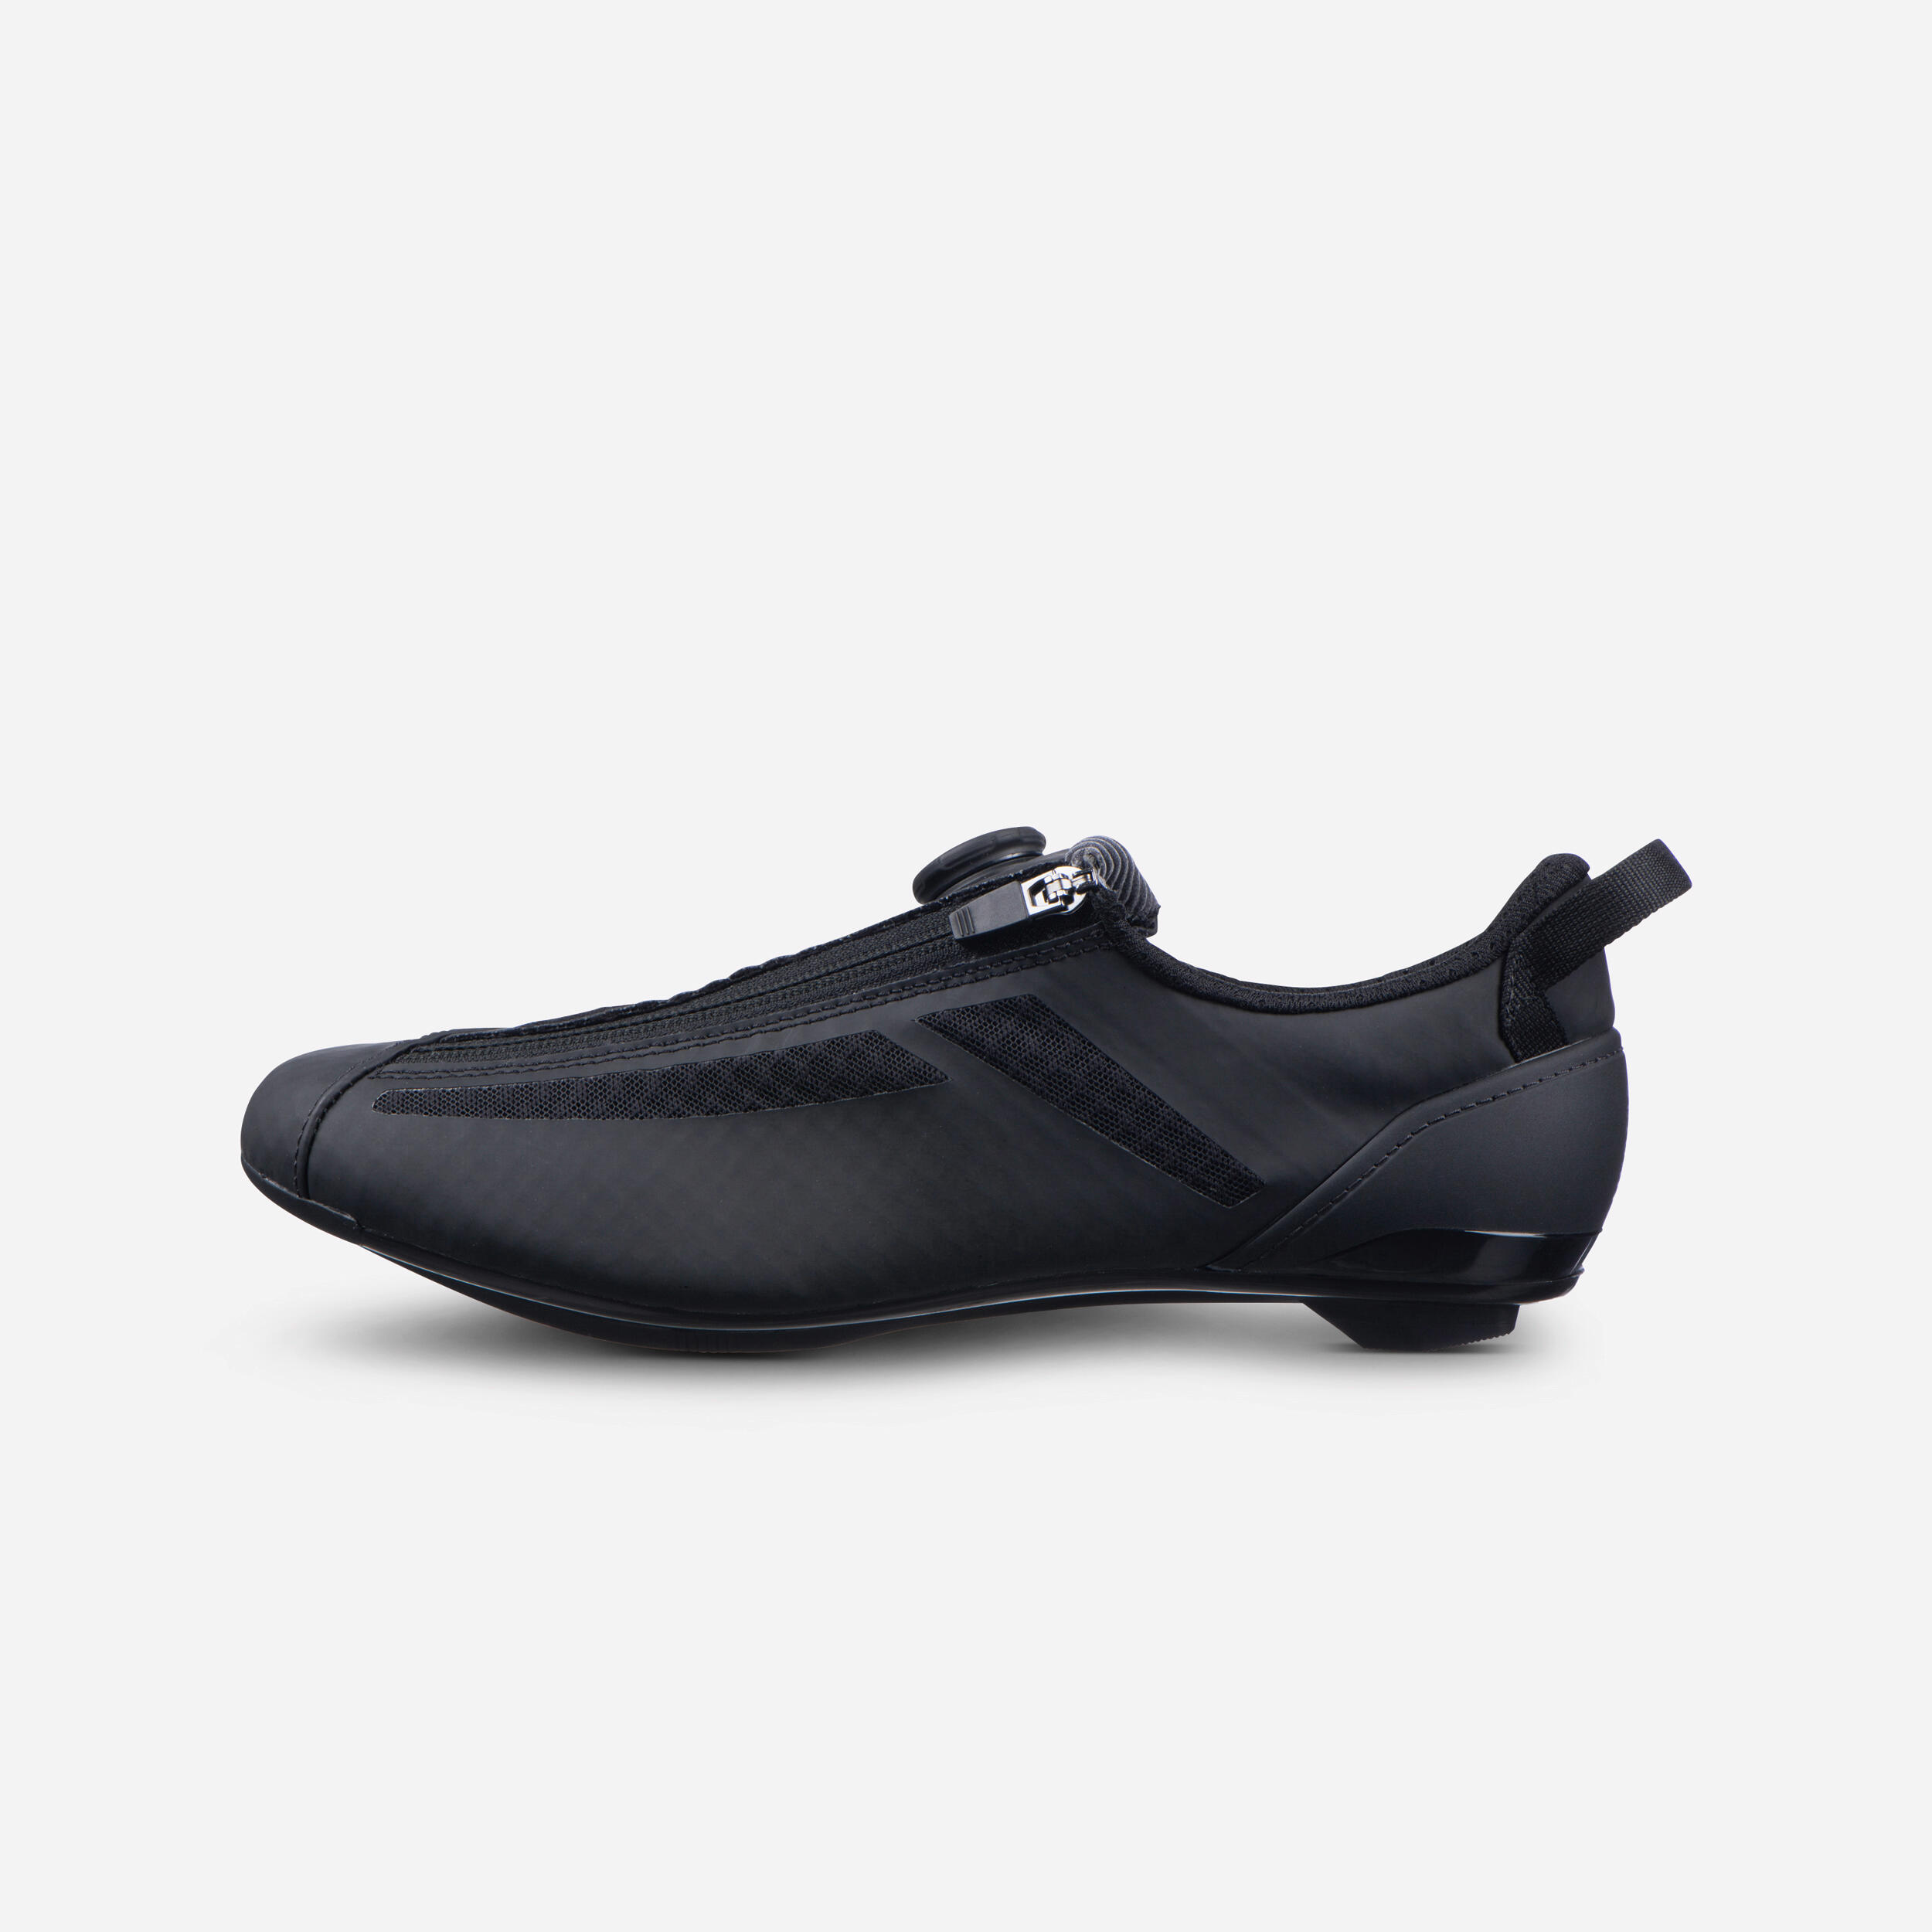 Aptonia Triathlon Cycling Shoes - Black 1/8